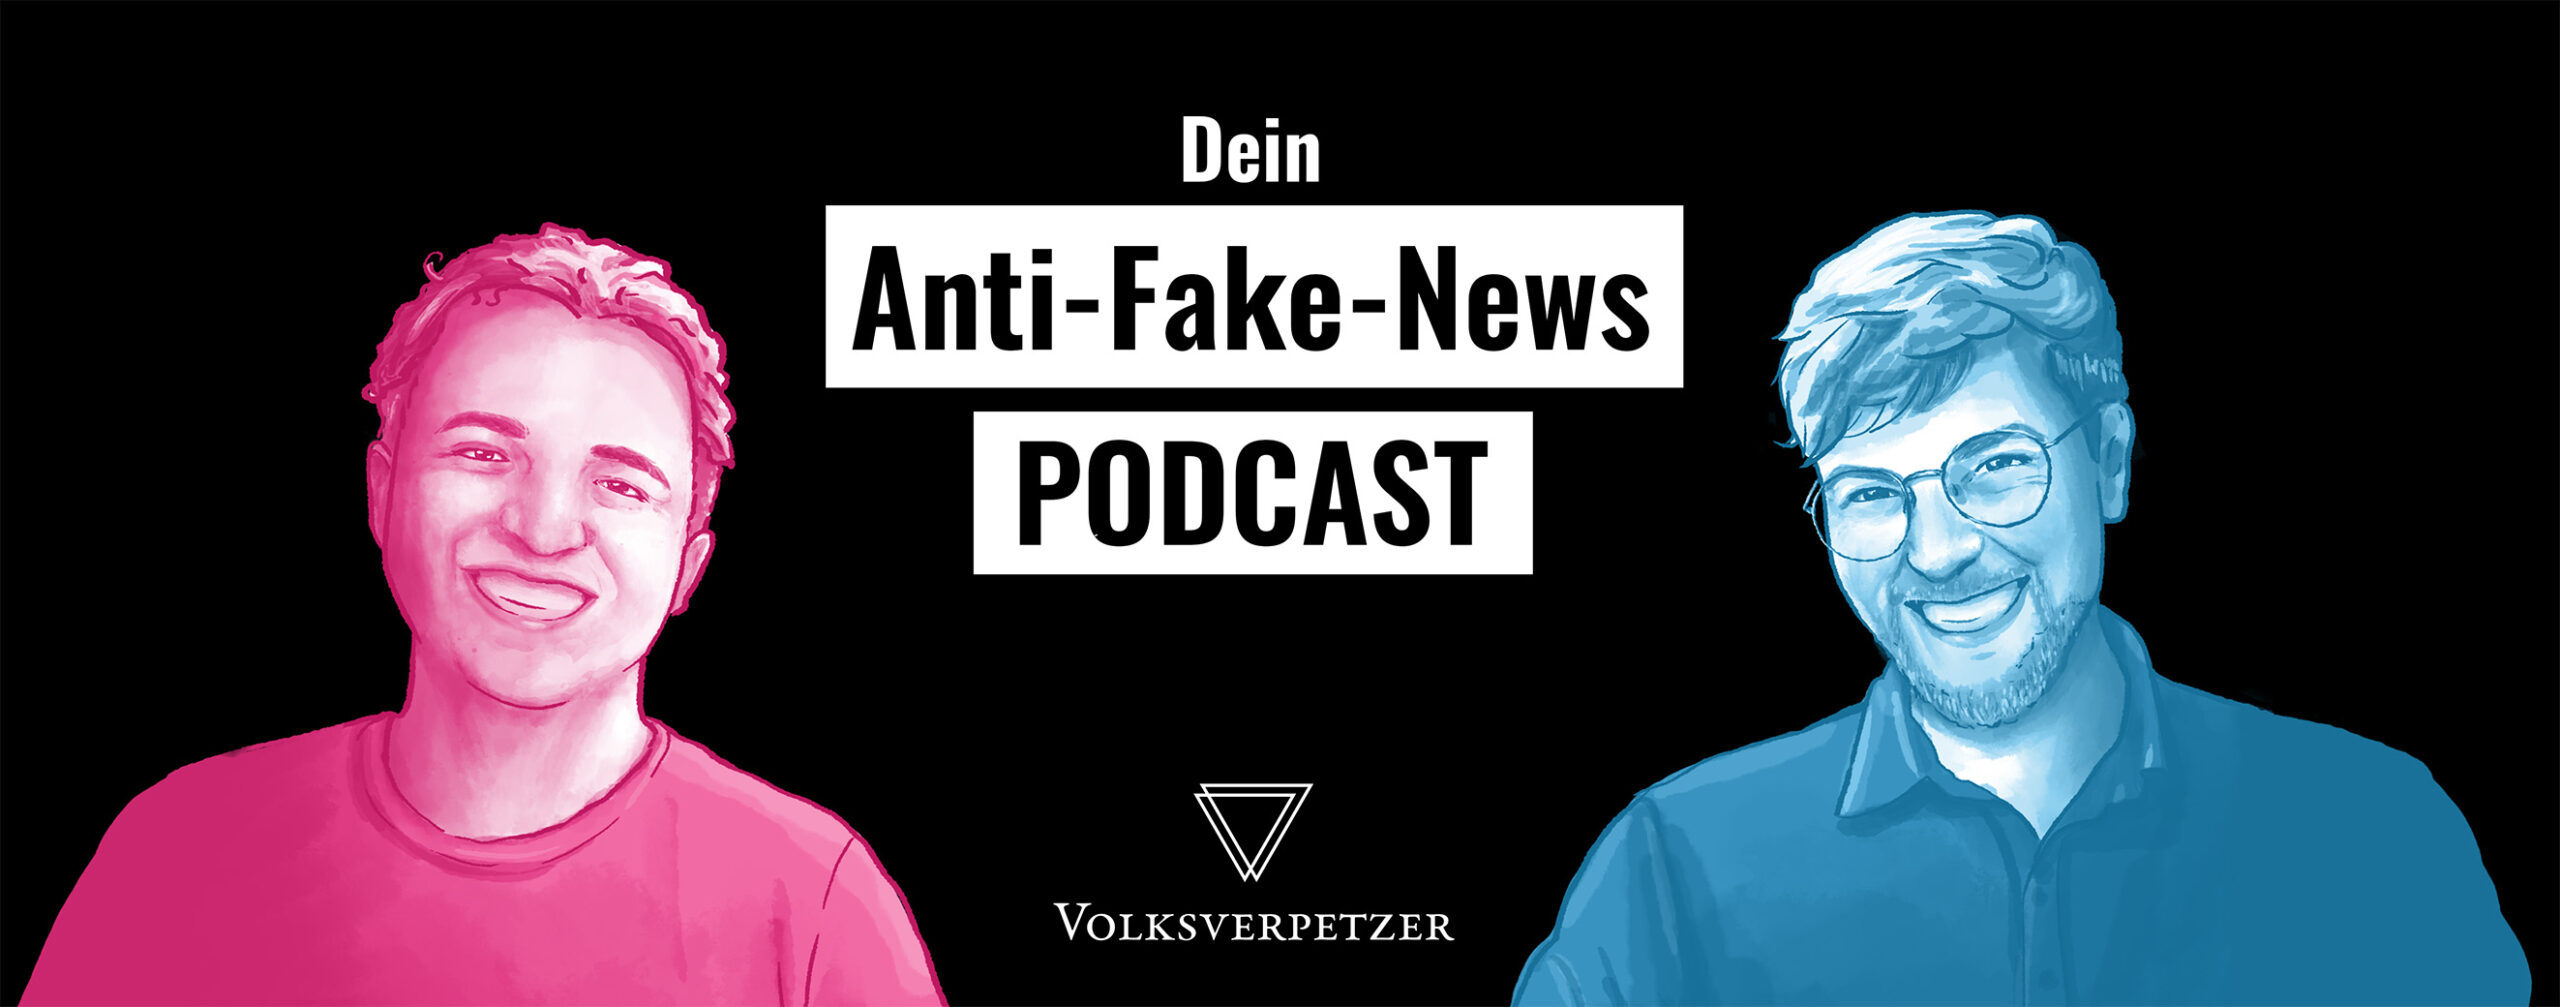 Dein Anti-Fake-News Podcast - schwarze Schrift auf weißen Balken.<br />
Links: Frederik Mallon in Pink, Rechts: Thomas Laschyk in Blau, monochrome digitale Zeichnungen. Beide grinsen freundlich.<br />
Hintergrund: Schwarz.